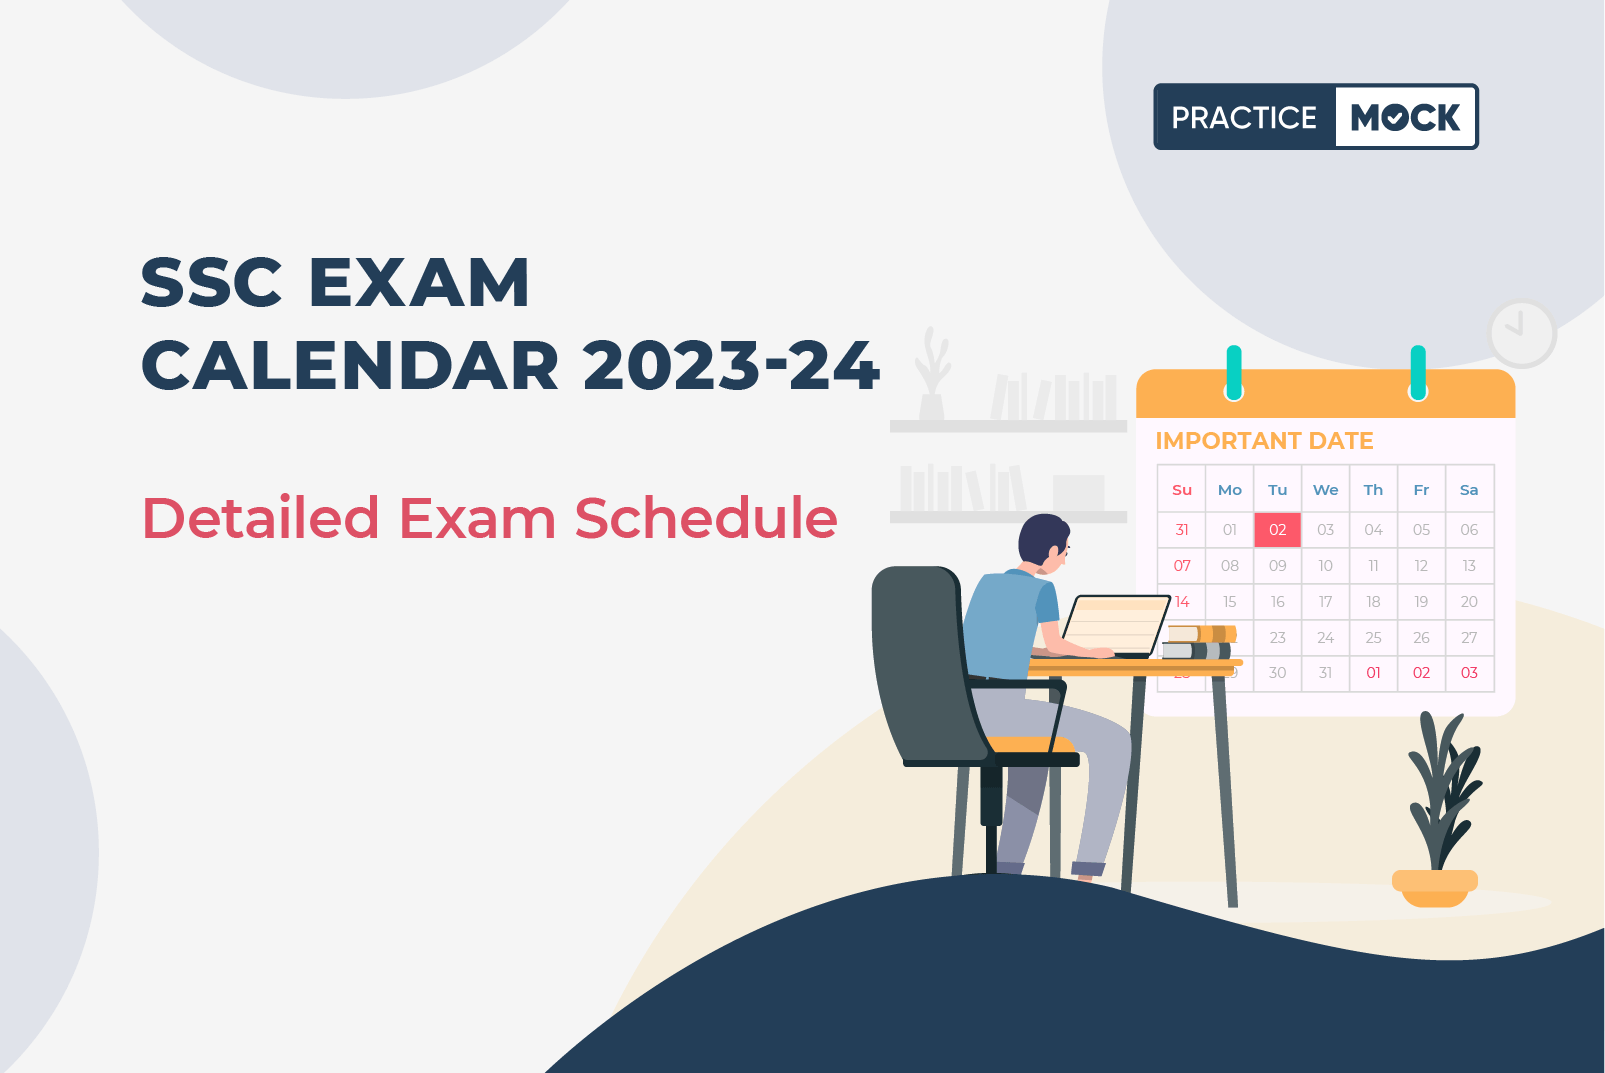 SSC Exam Calendar 202324 Detailed Exam Schedule PracticeMock